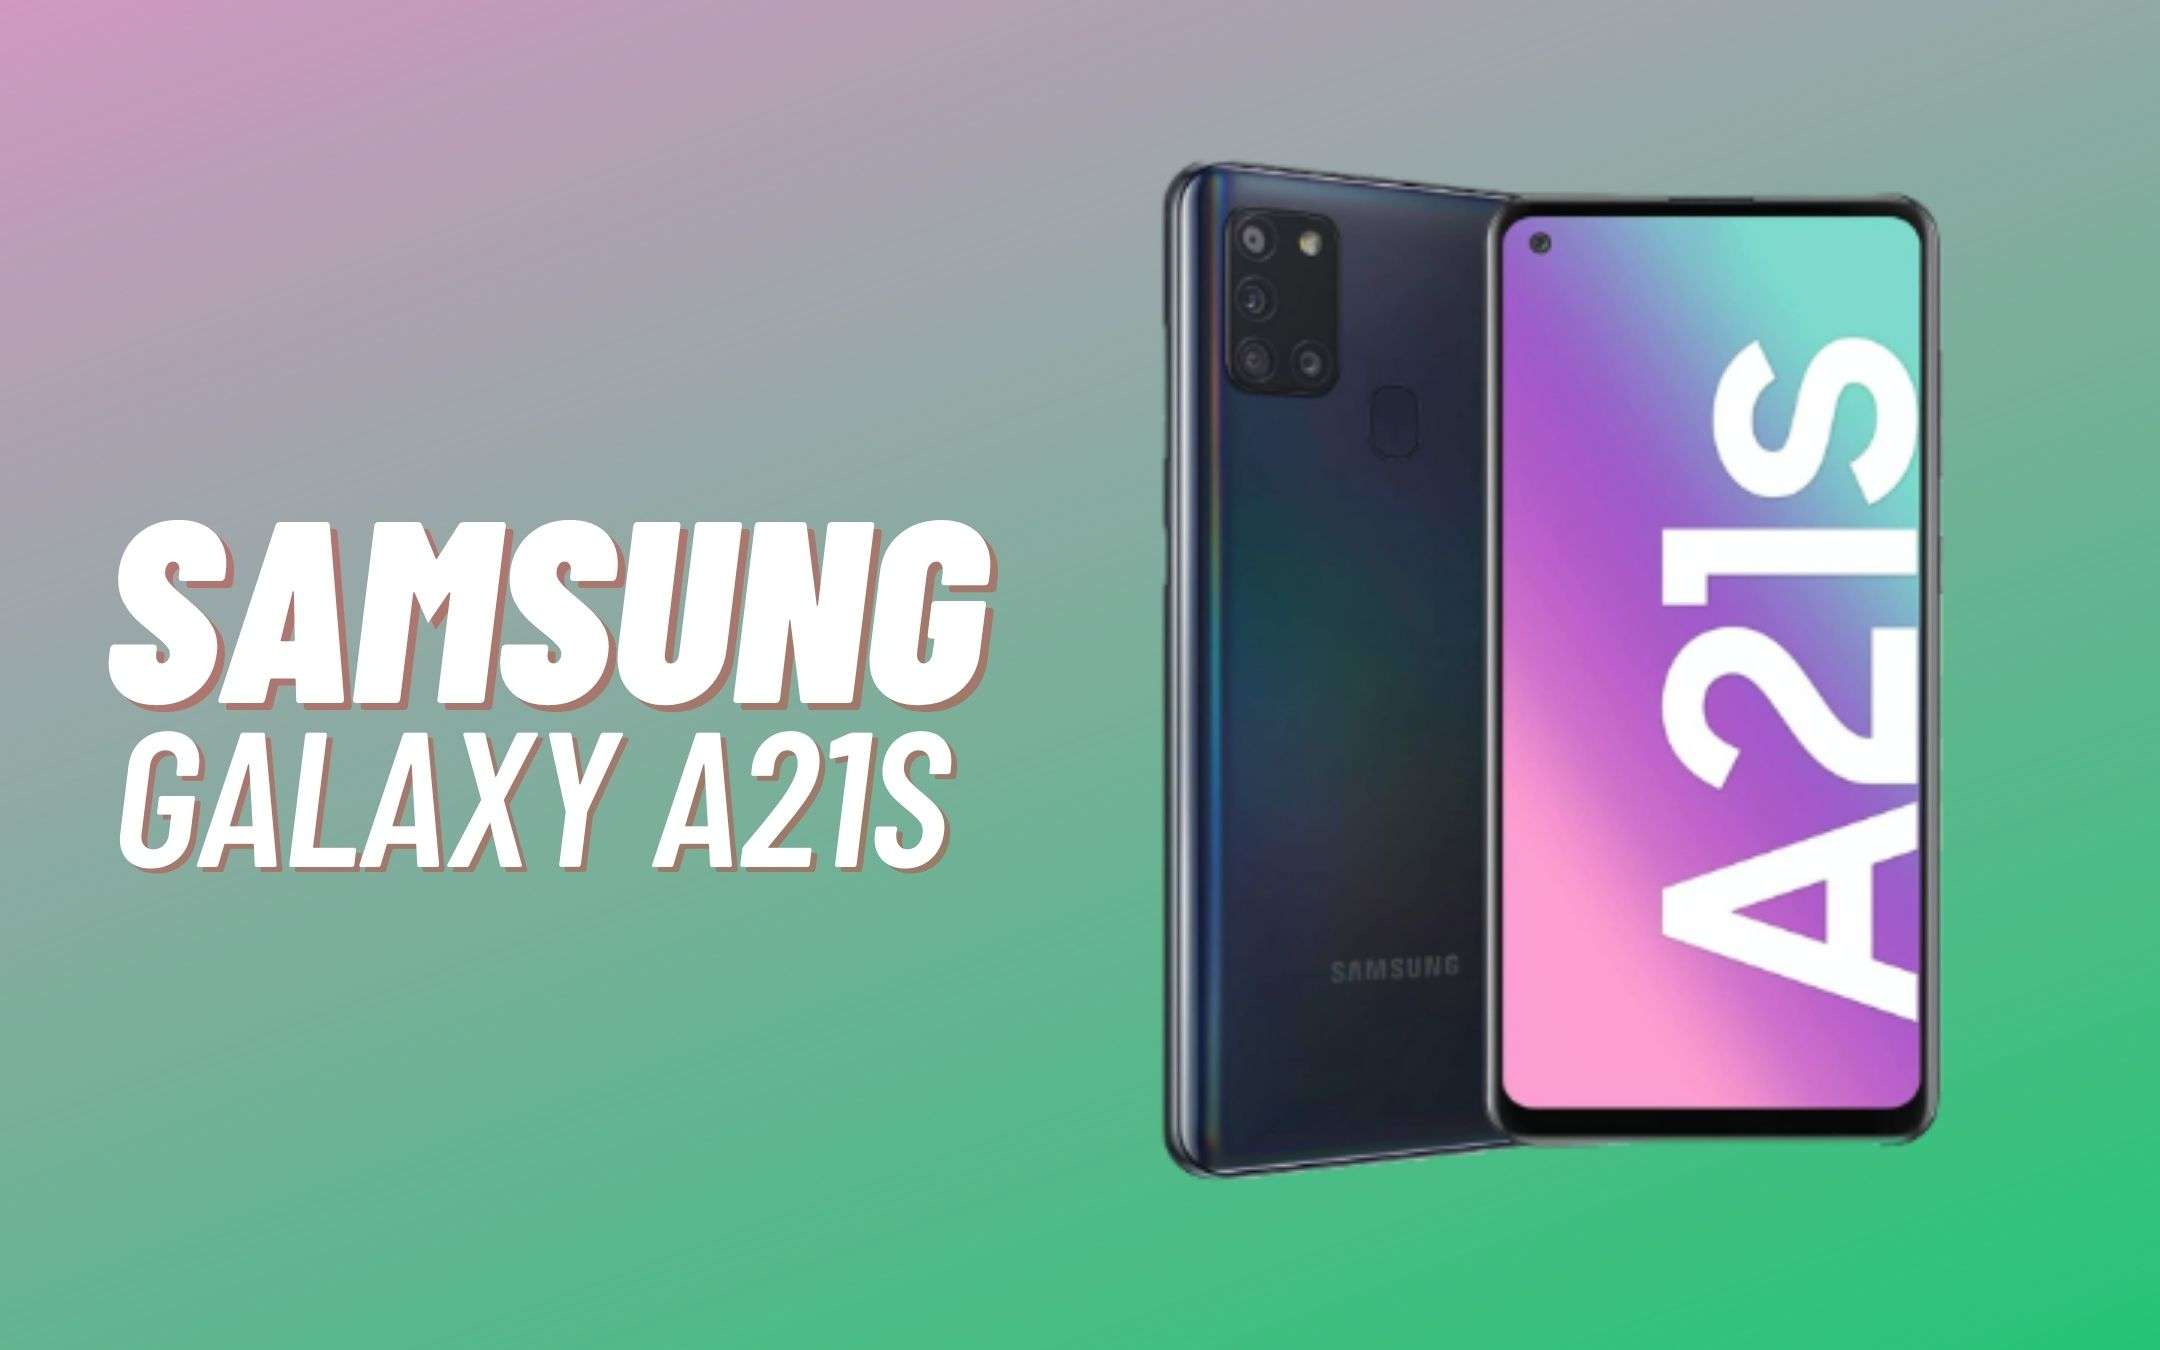 Samsung Galaxy A21s si porta a casa con 50€ di sconto